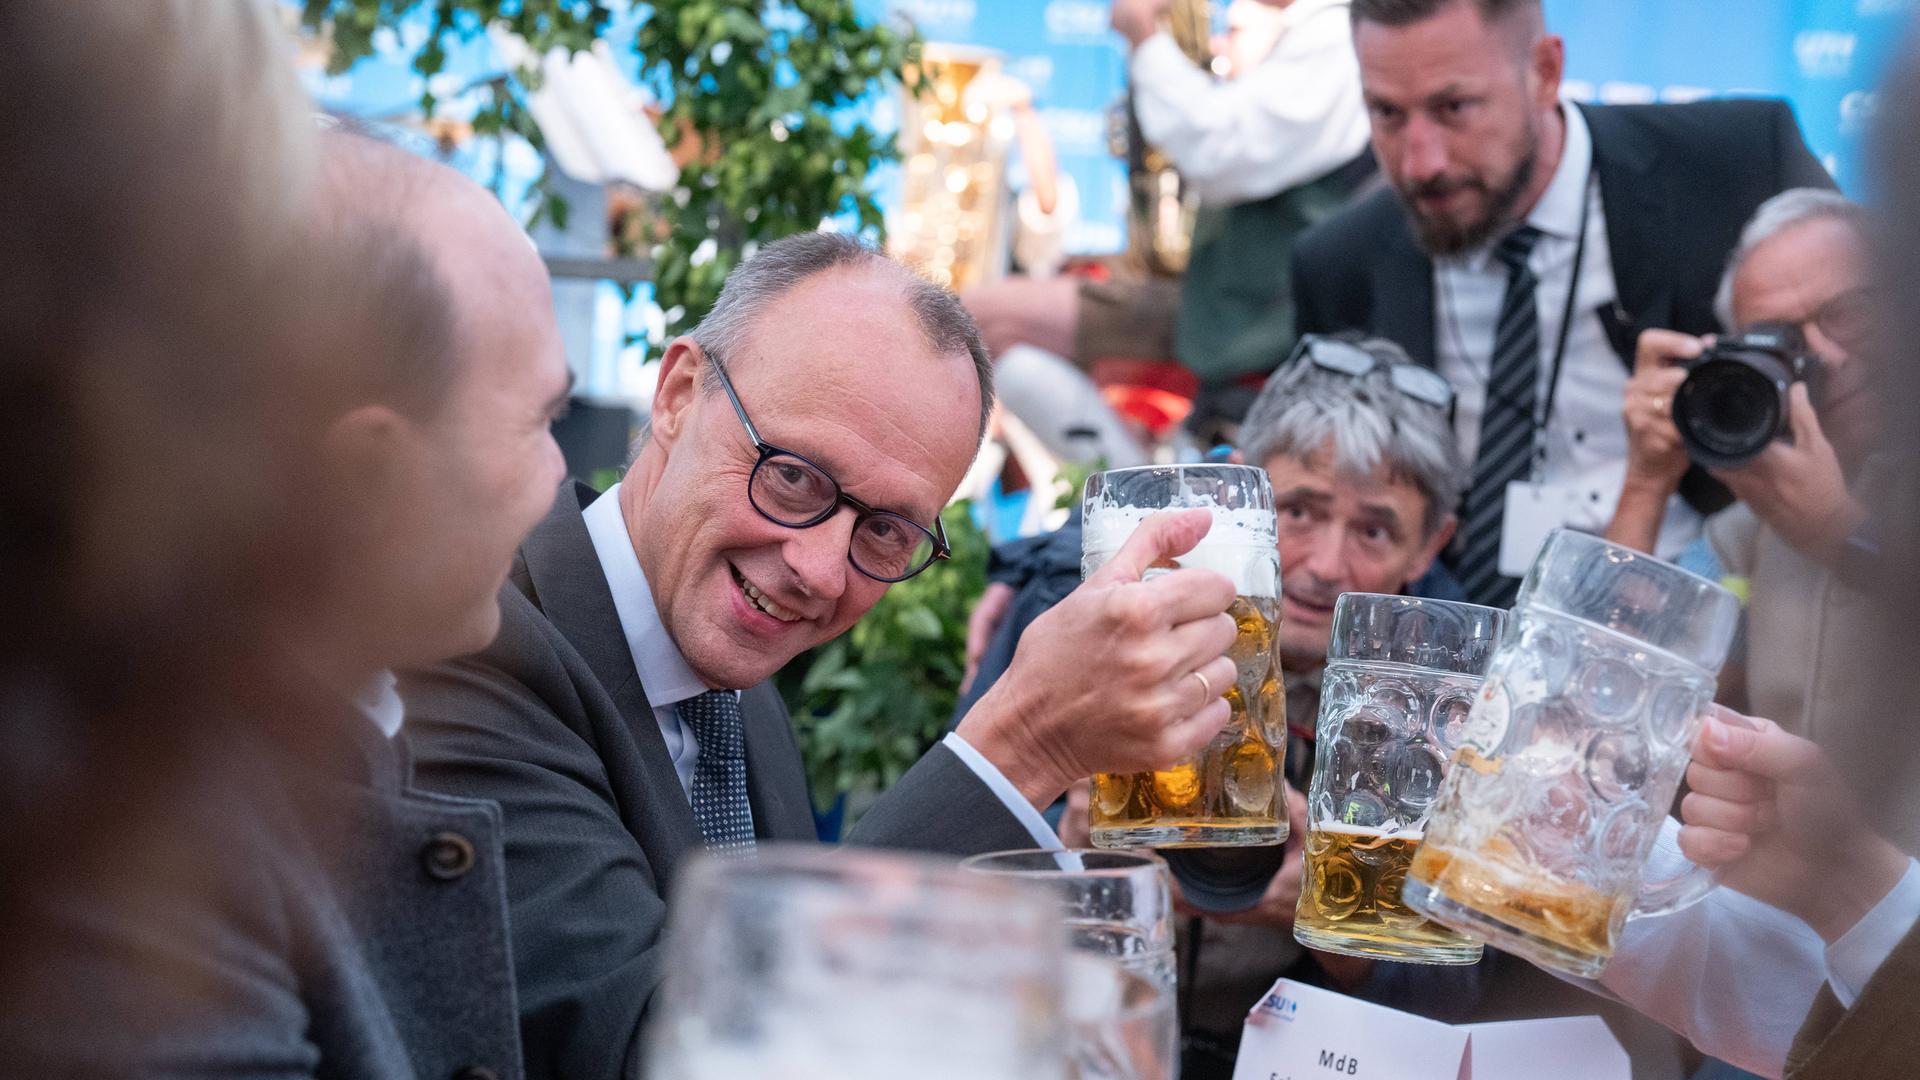 Friedrich Merz, Parteivorsitzender CDU, als Festredner auf der Altdorfer Wiesn in Altdorf bei Landshut stößt mit einer Maß Bier. Um ihn herum weitere Männer mit Bierkrügen und ein Fotograf, der das Schauspiel gekonnt in Szene setzt.